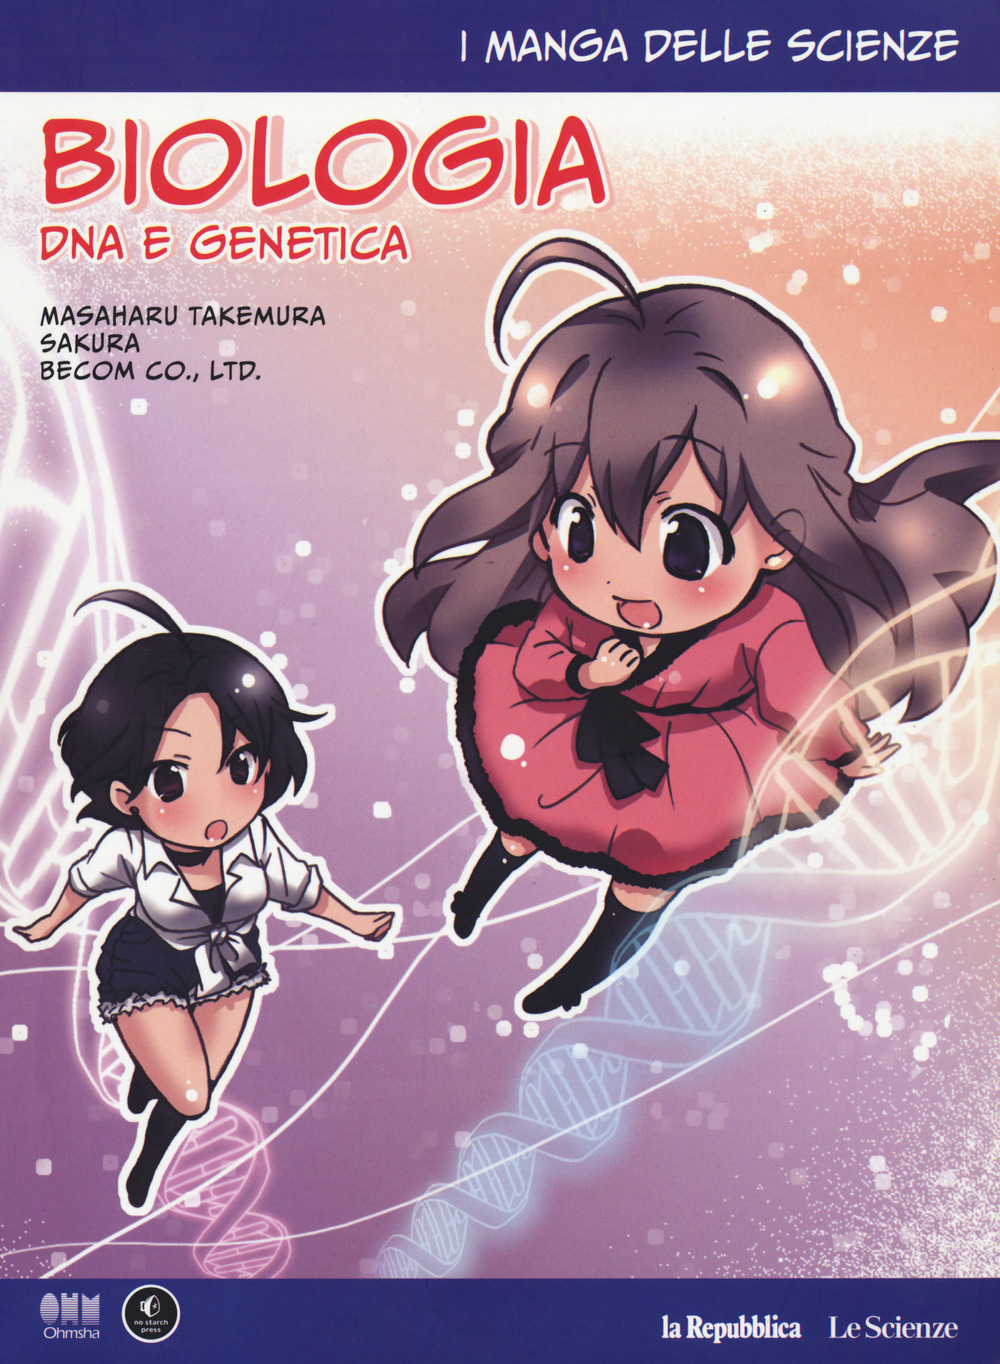 Image of Biologia: DNA e genetica. I manga delle scienze. Vol. 4